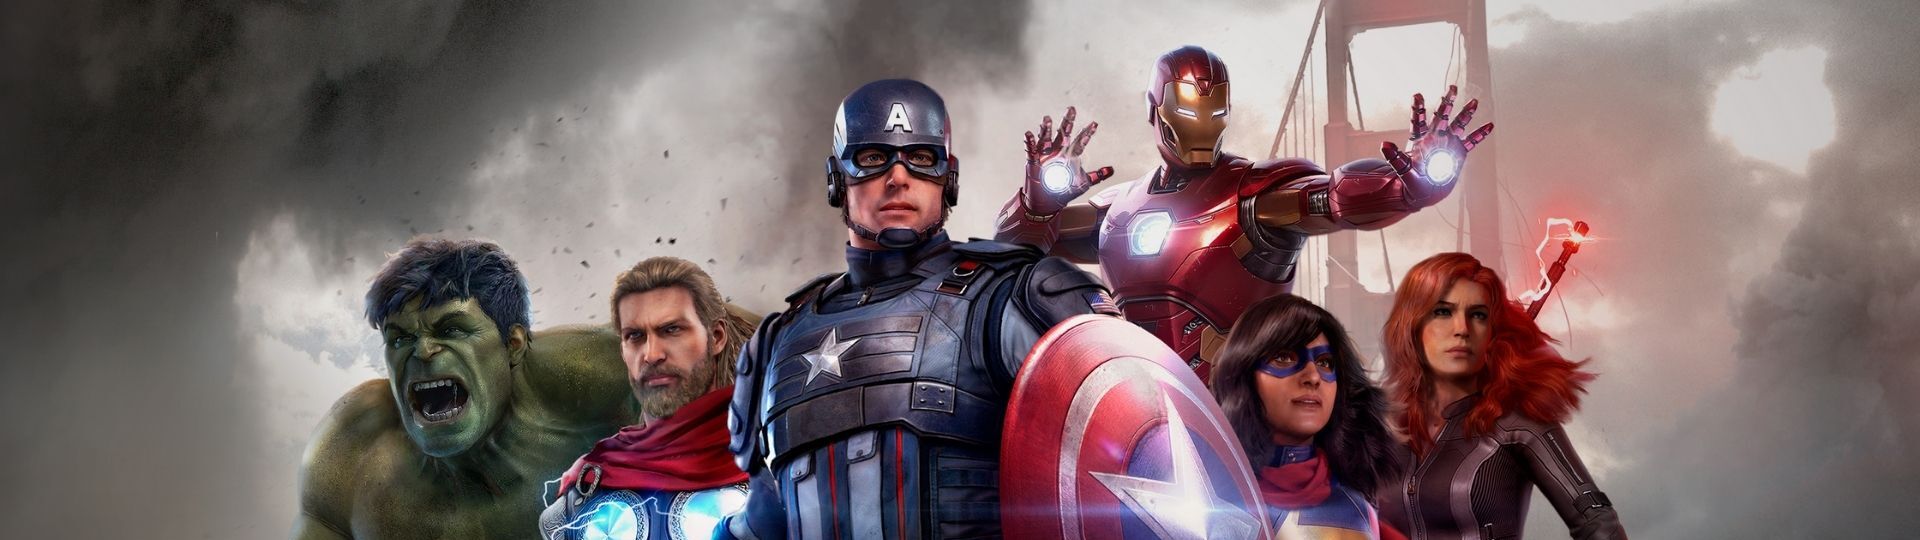 Marvel's Avengers bude mít placené battlepassy | Novinky